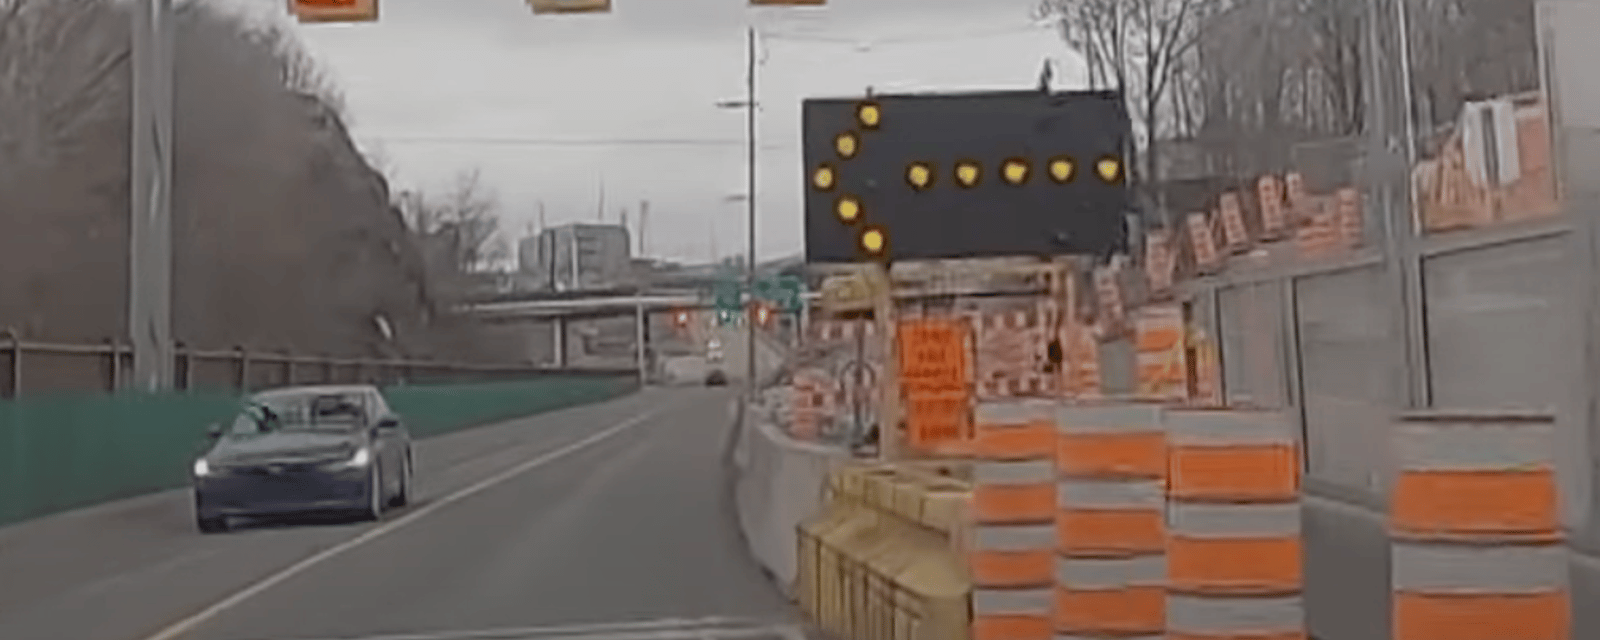 Trois ponts fermés à partir de ce soir et ça va causer un chaos sur les routes du Québec